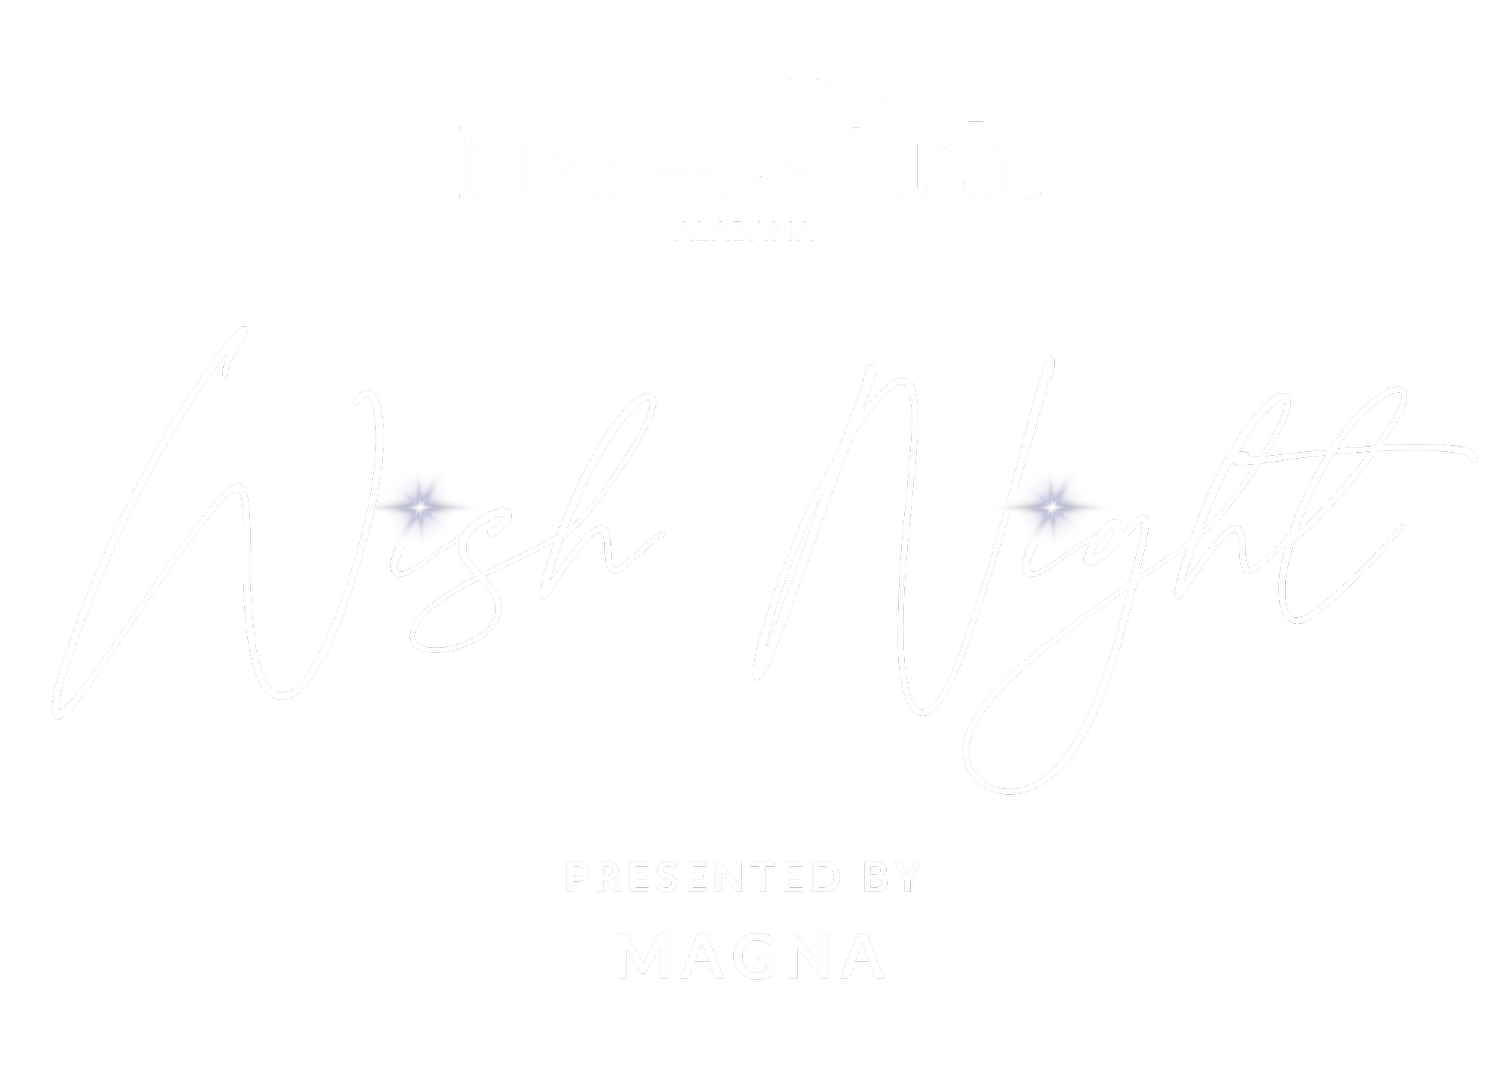 Birmingham Wish Night